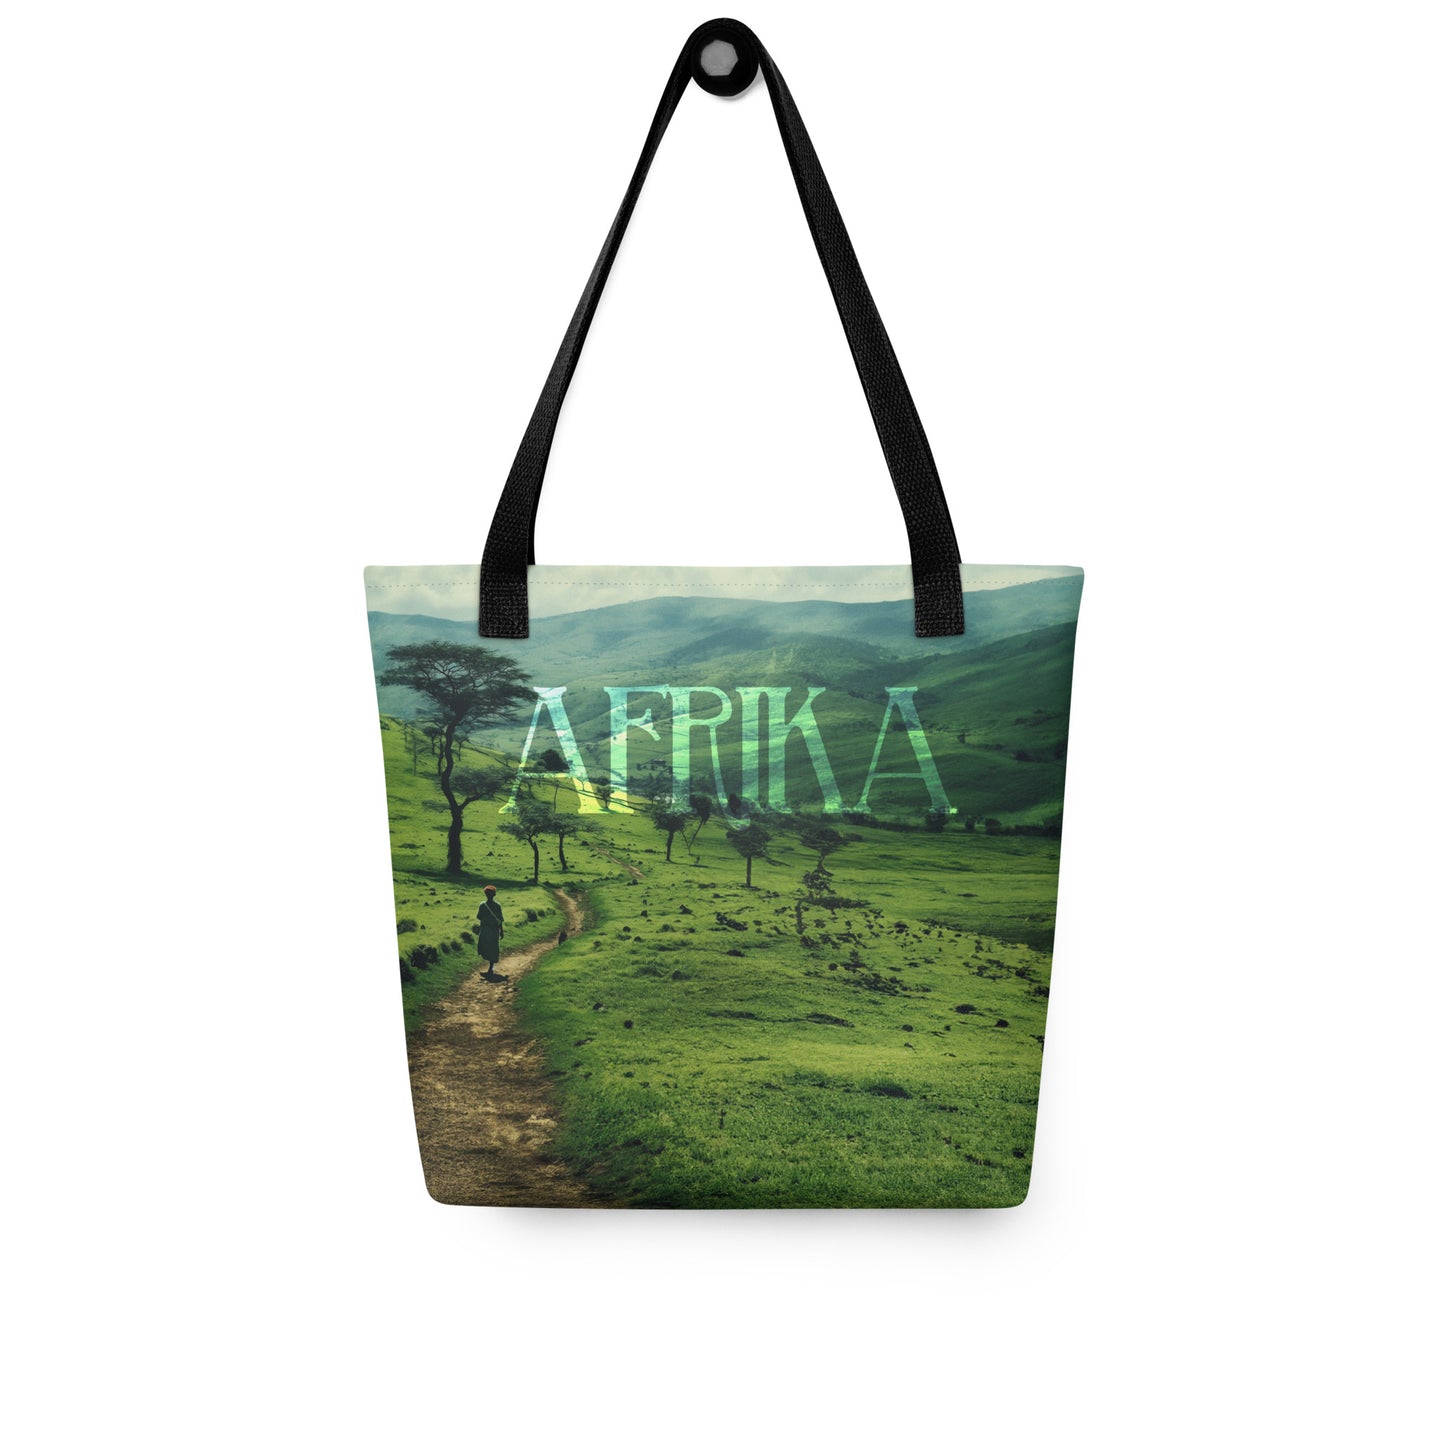 AFRIKA - Tote bag